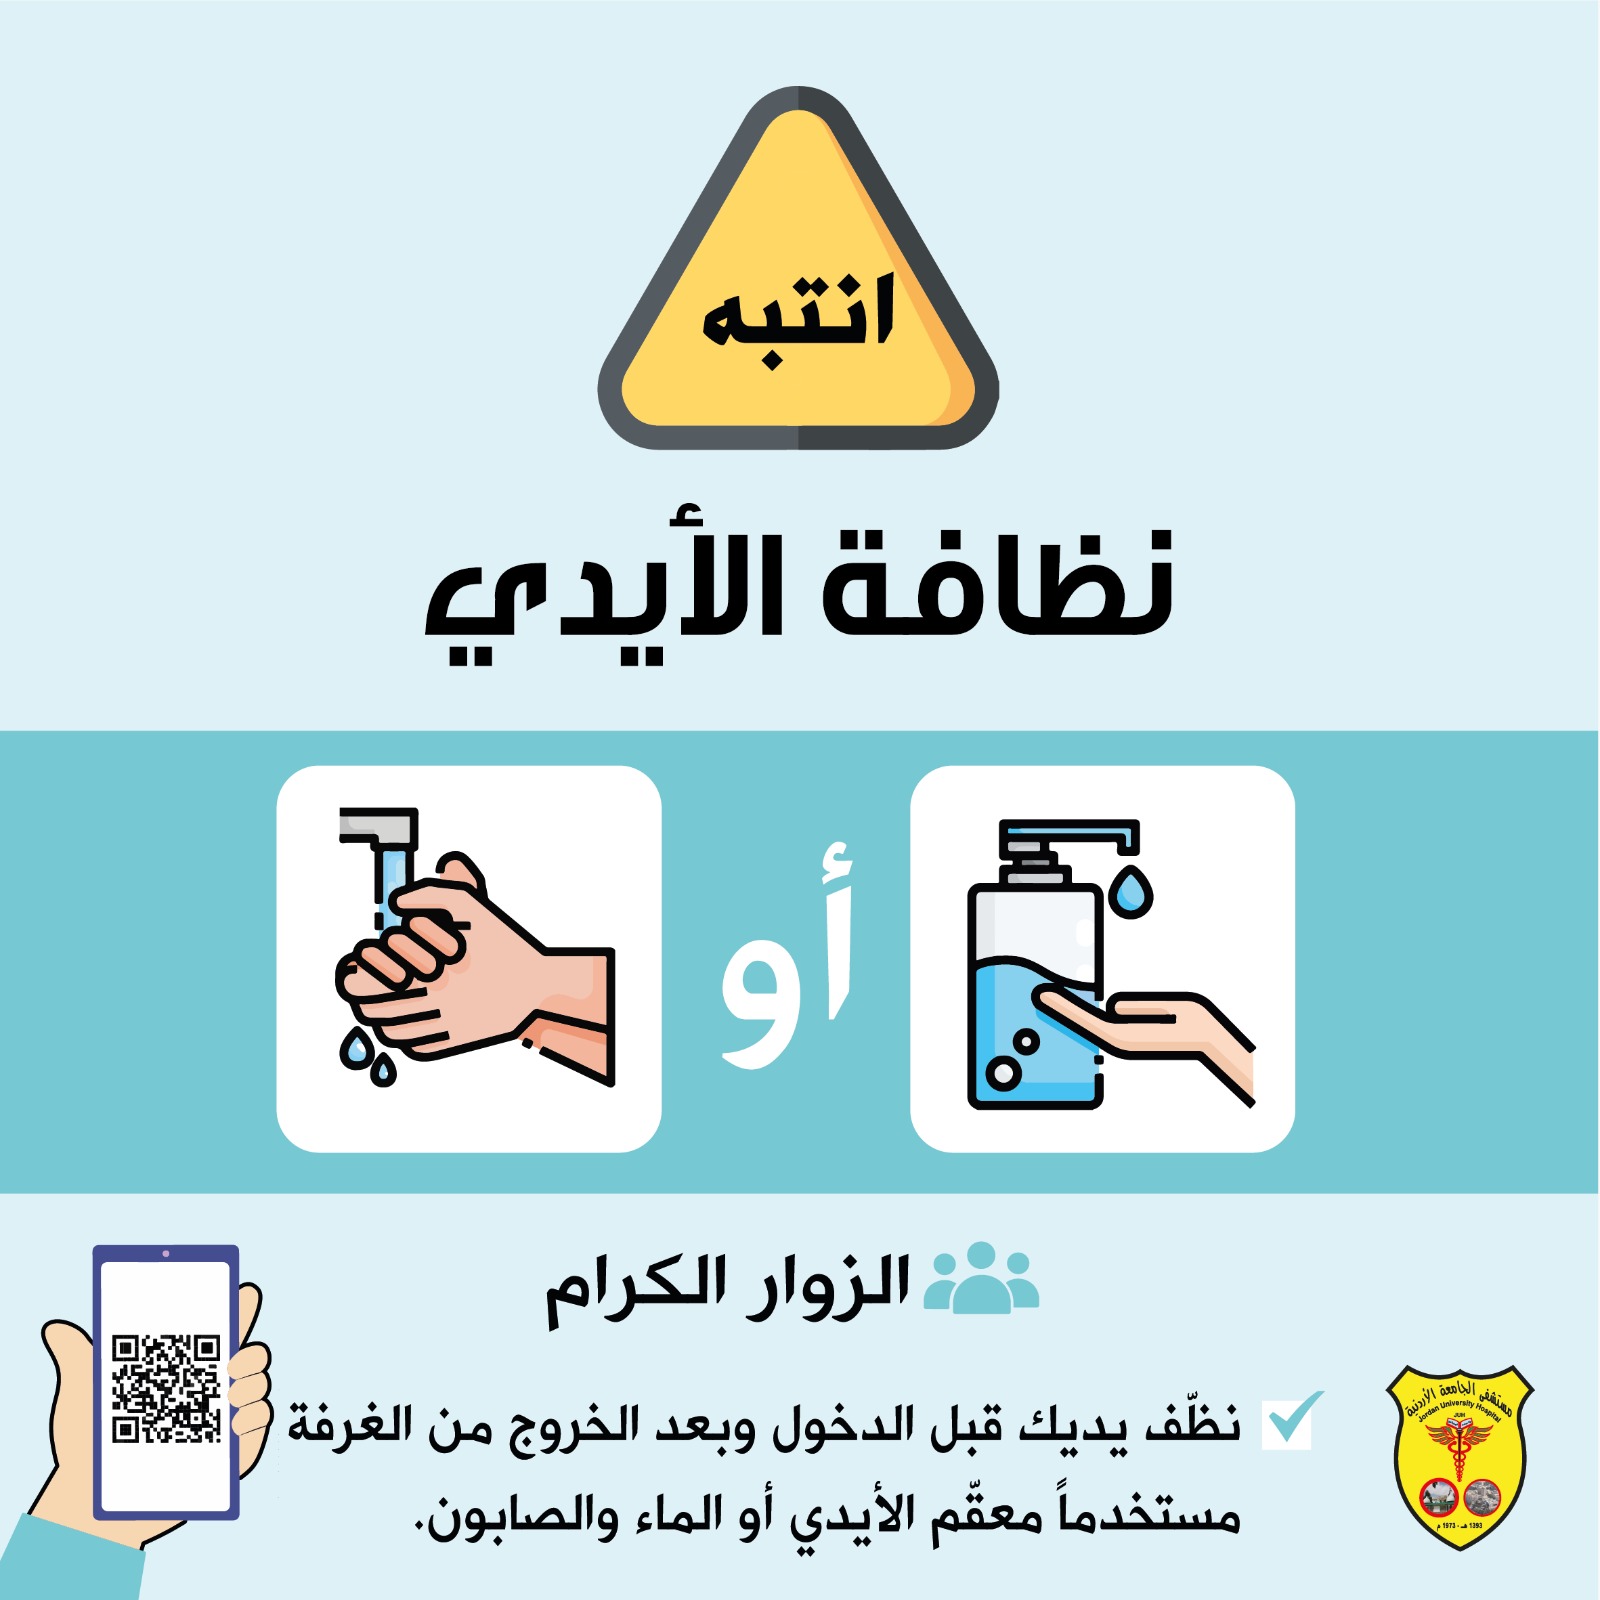 نظف يديك قبل و بعد الخرو.jpg